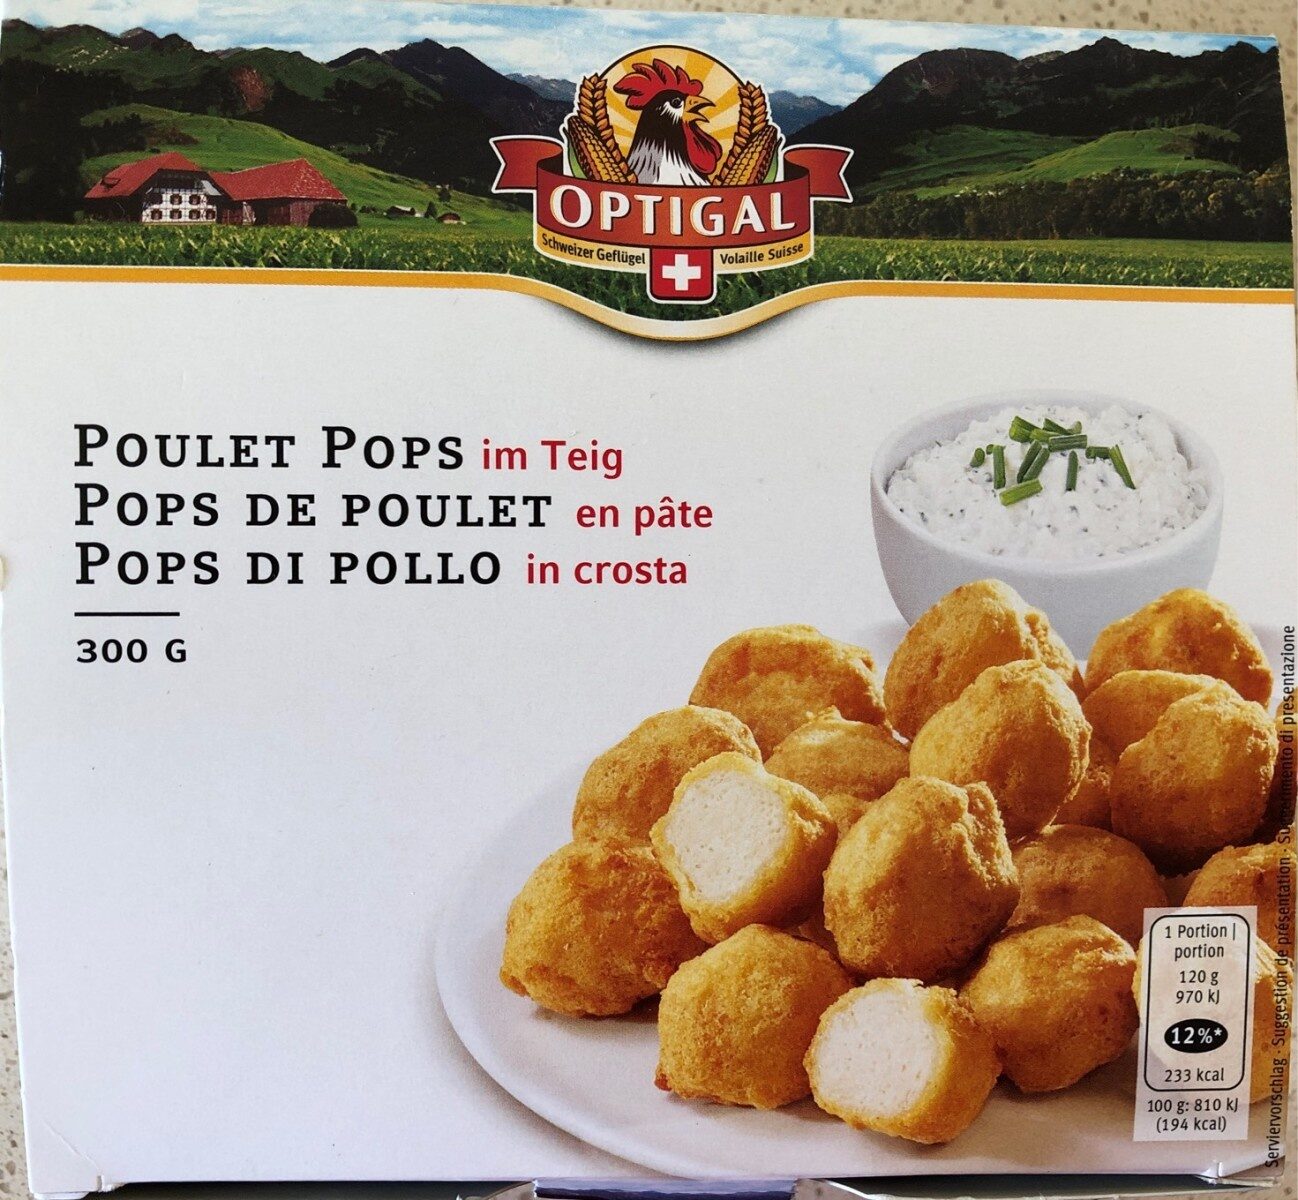 Pops de poulet - Prodotto - fr